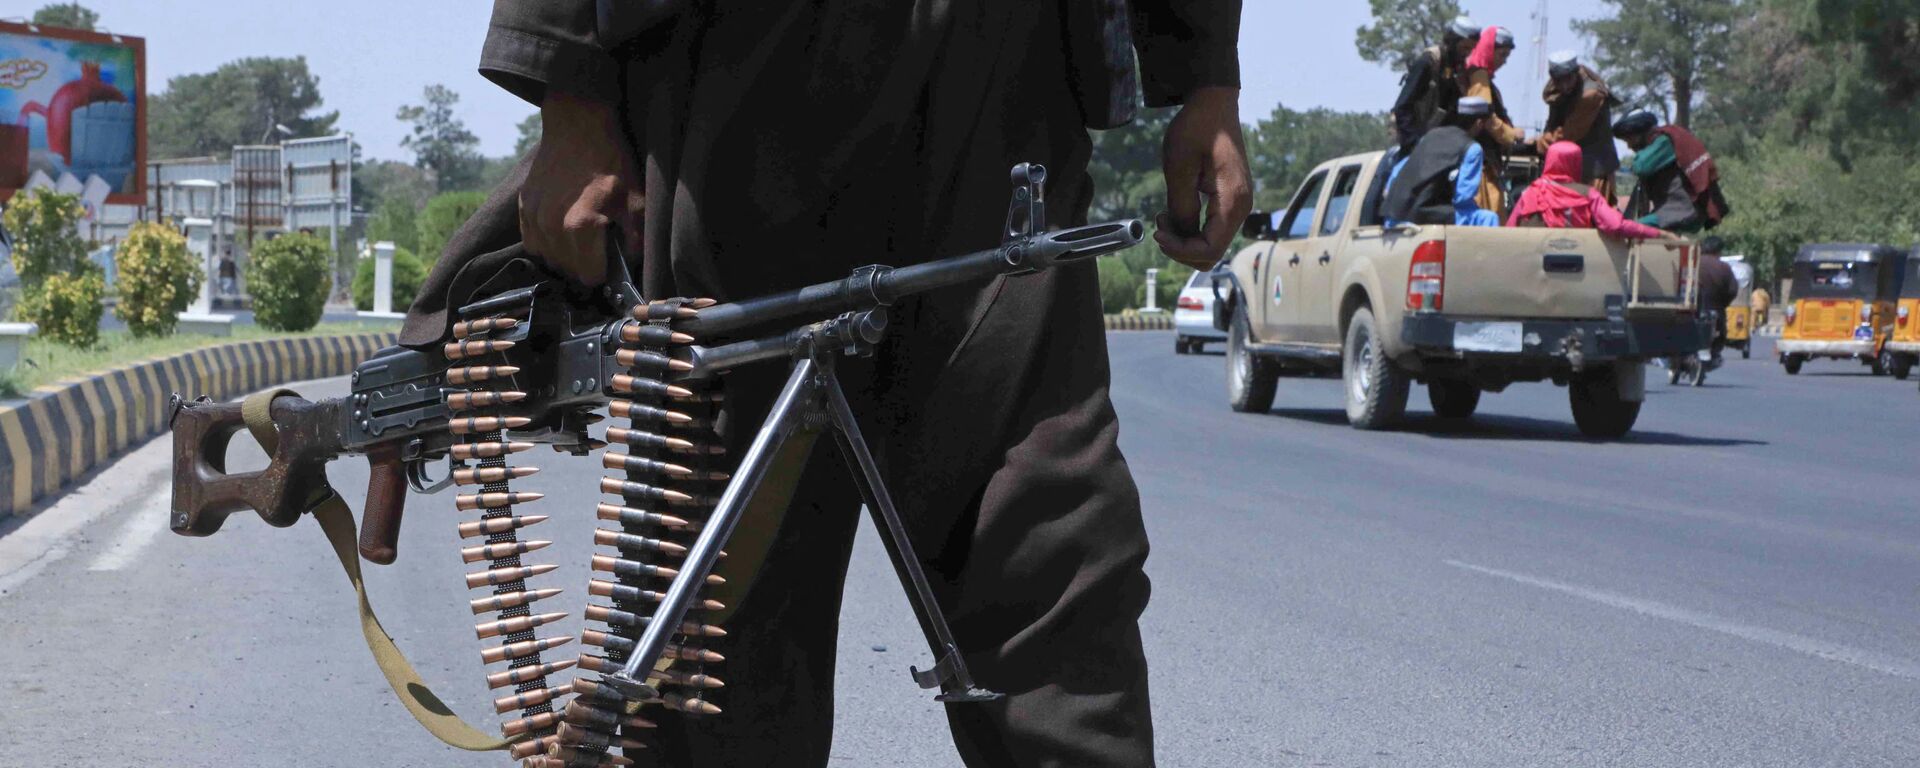 Боевики Талибана патрулируют улицу в Герате, Афганистан. 14 августа 2021 года - Sputnik Кыргызстан, 1920, 15.08.2021